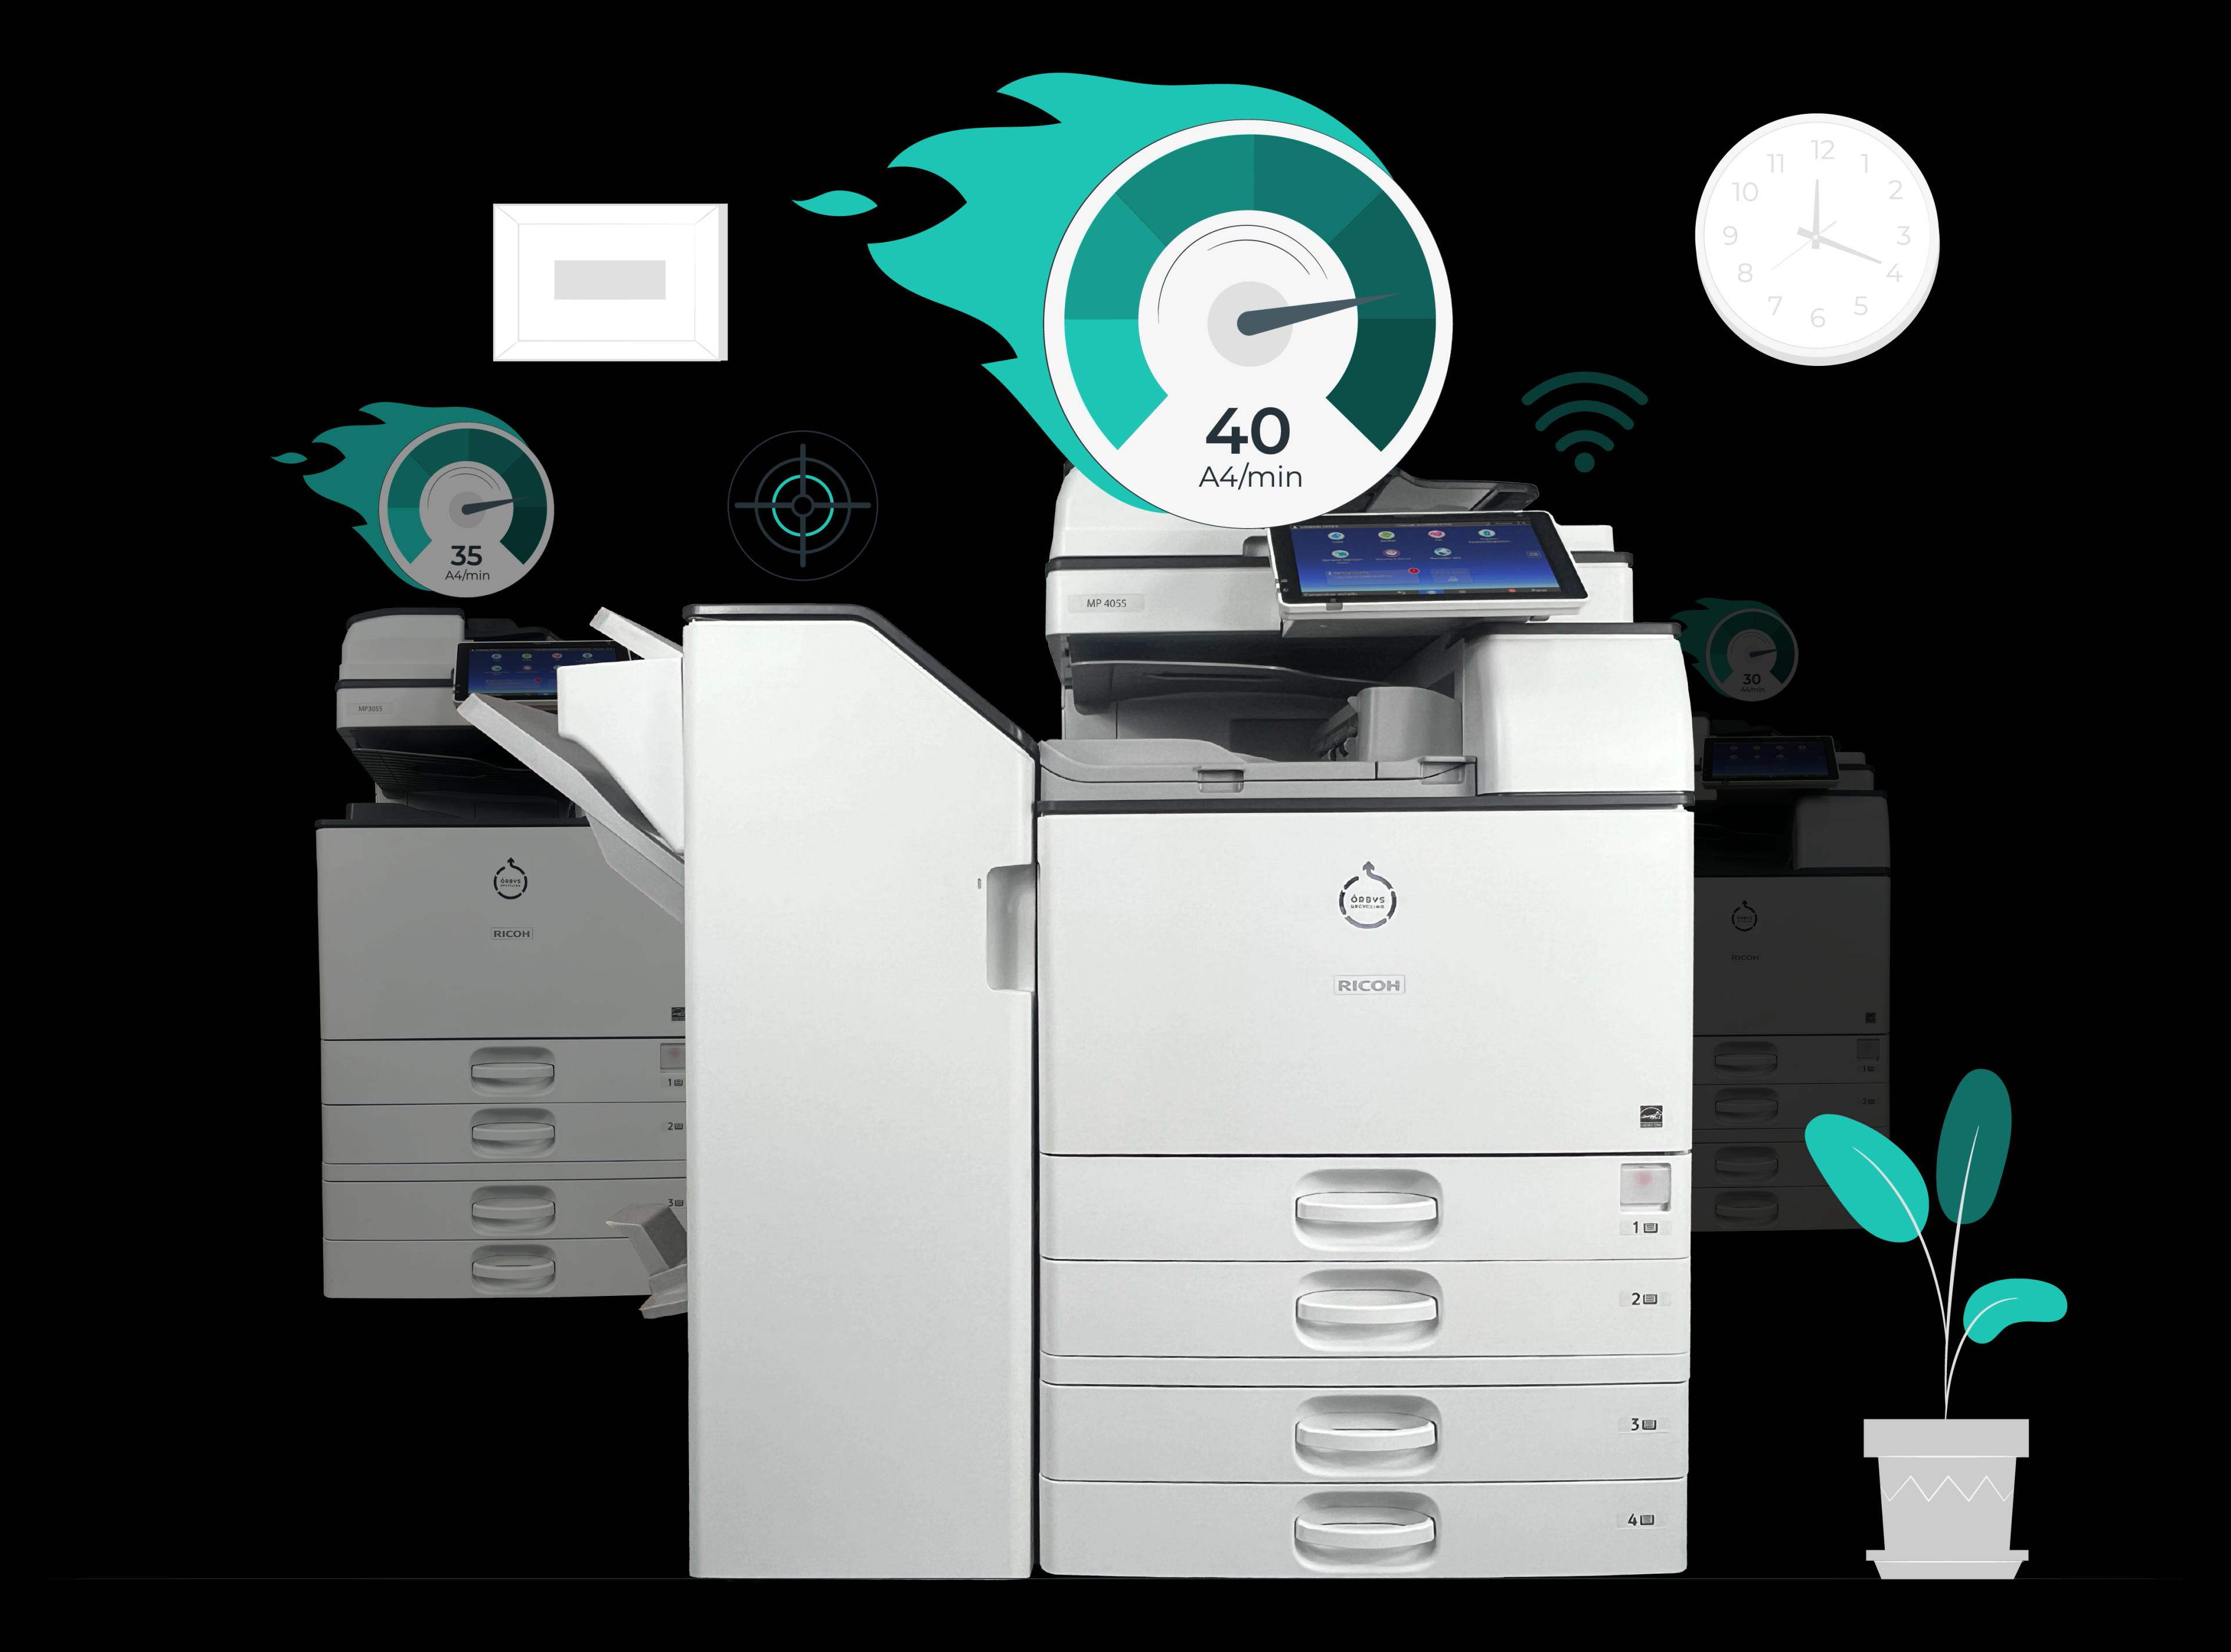 Impresora de alta capacidad equipada con un potente procesador itel perfecta para empresas y centros educativos